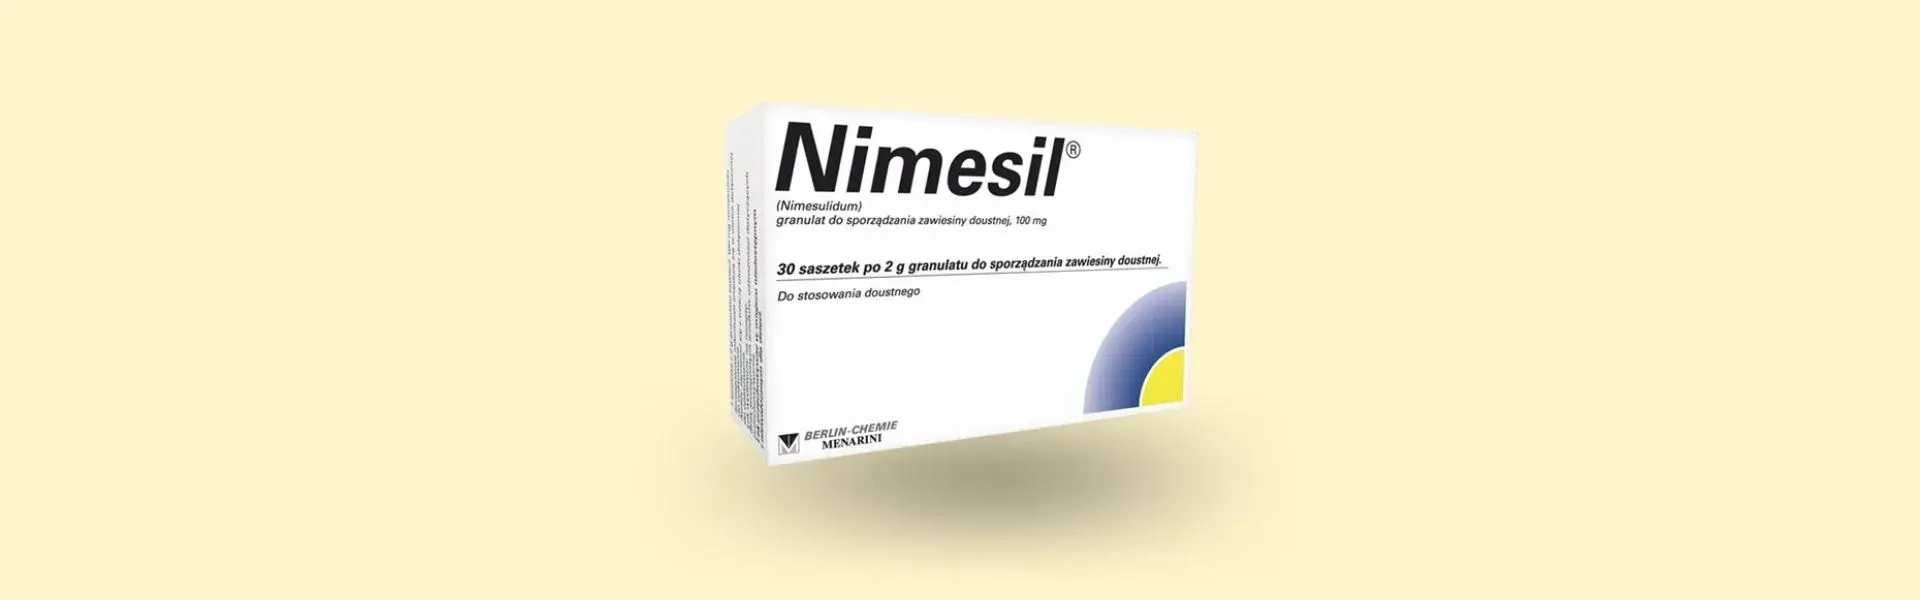 Nimesil może powodować działania niepożądane takie jak owrzodzenie przewodu pokarmowego. granulat do sporządzania zawiesiny